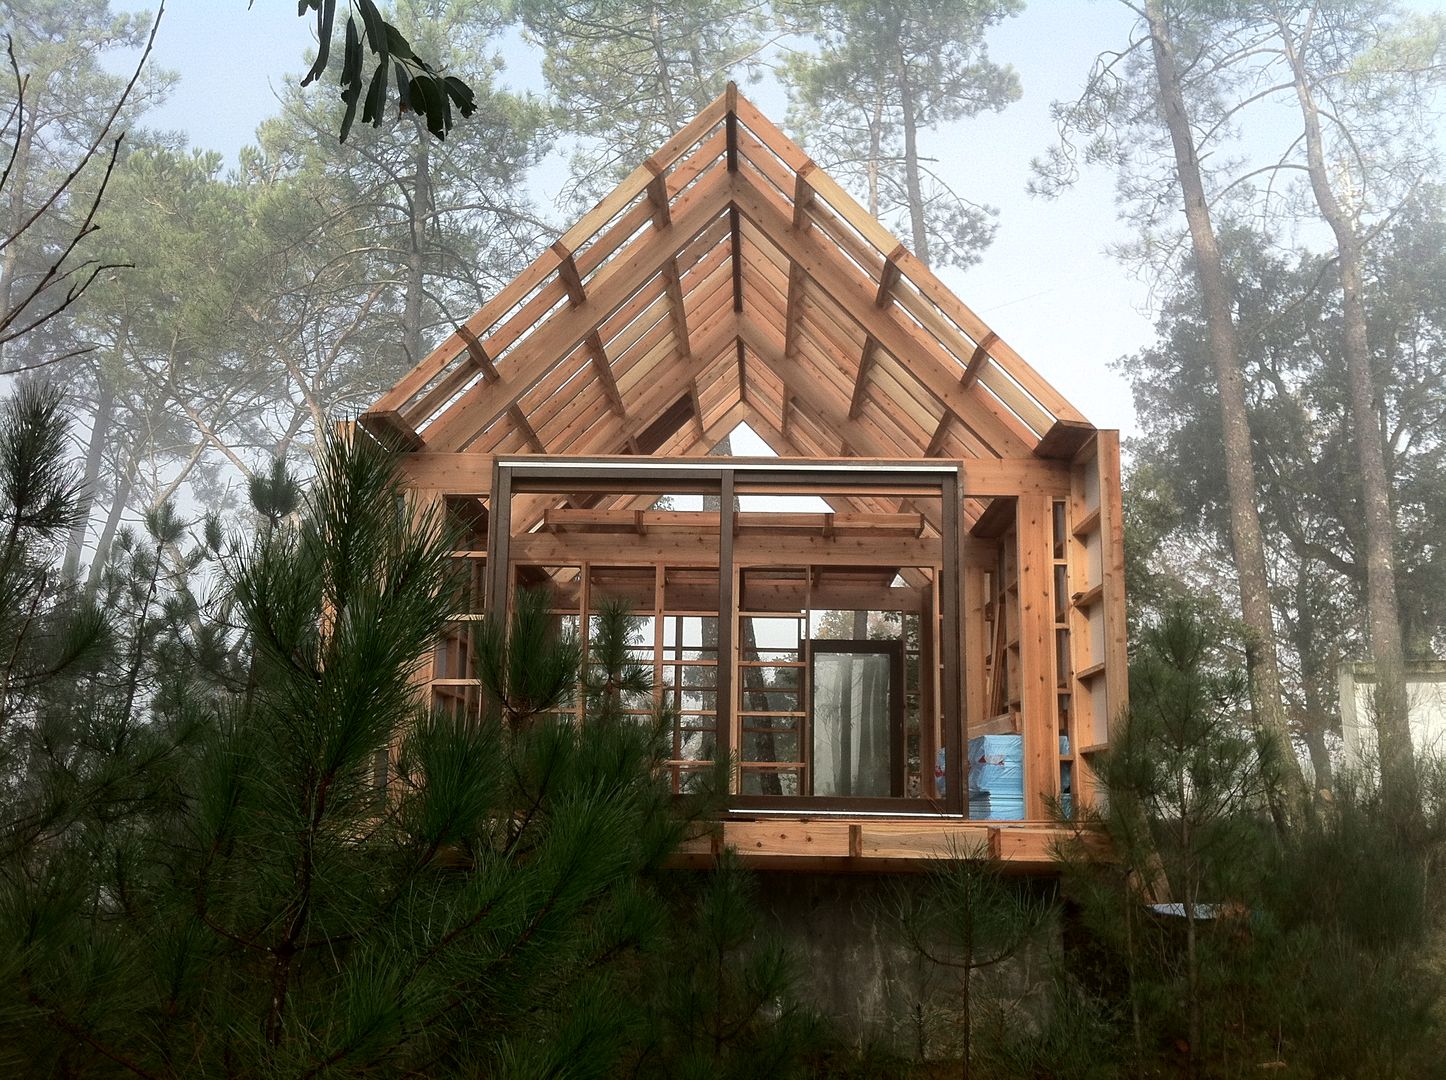 บ้านนอก โดย NORMA | Nova Arquitectura em Madeira (New Architecture in Wood), ชนบทฝรั่ง